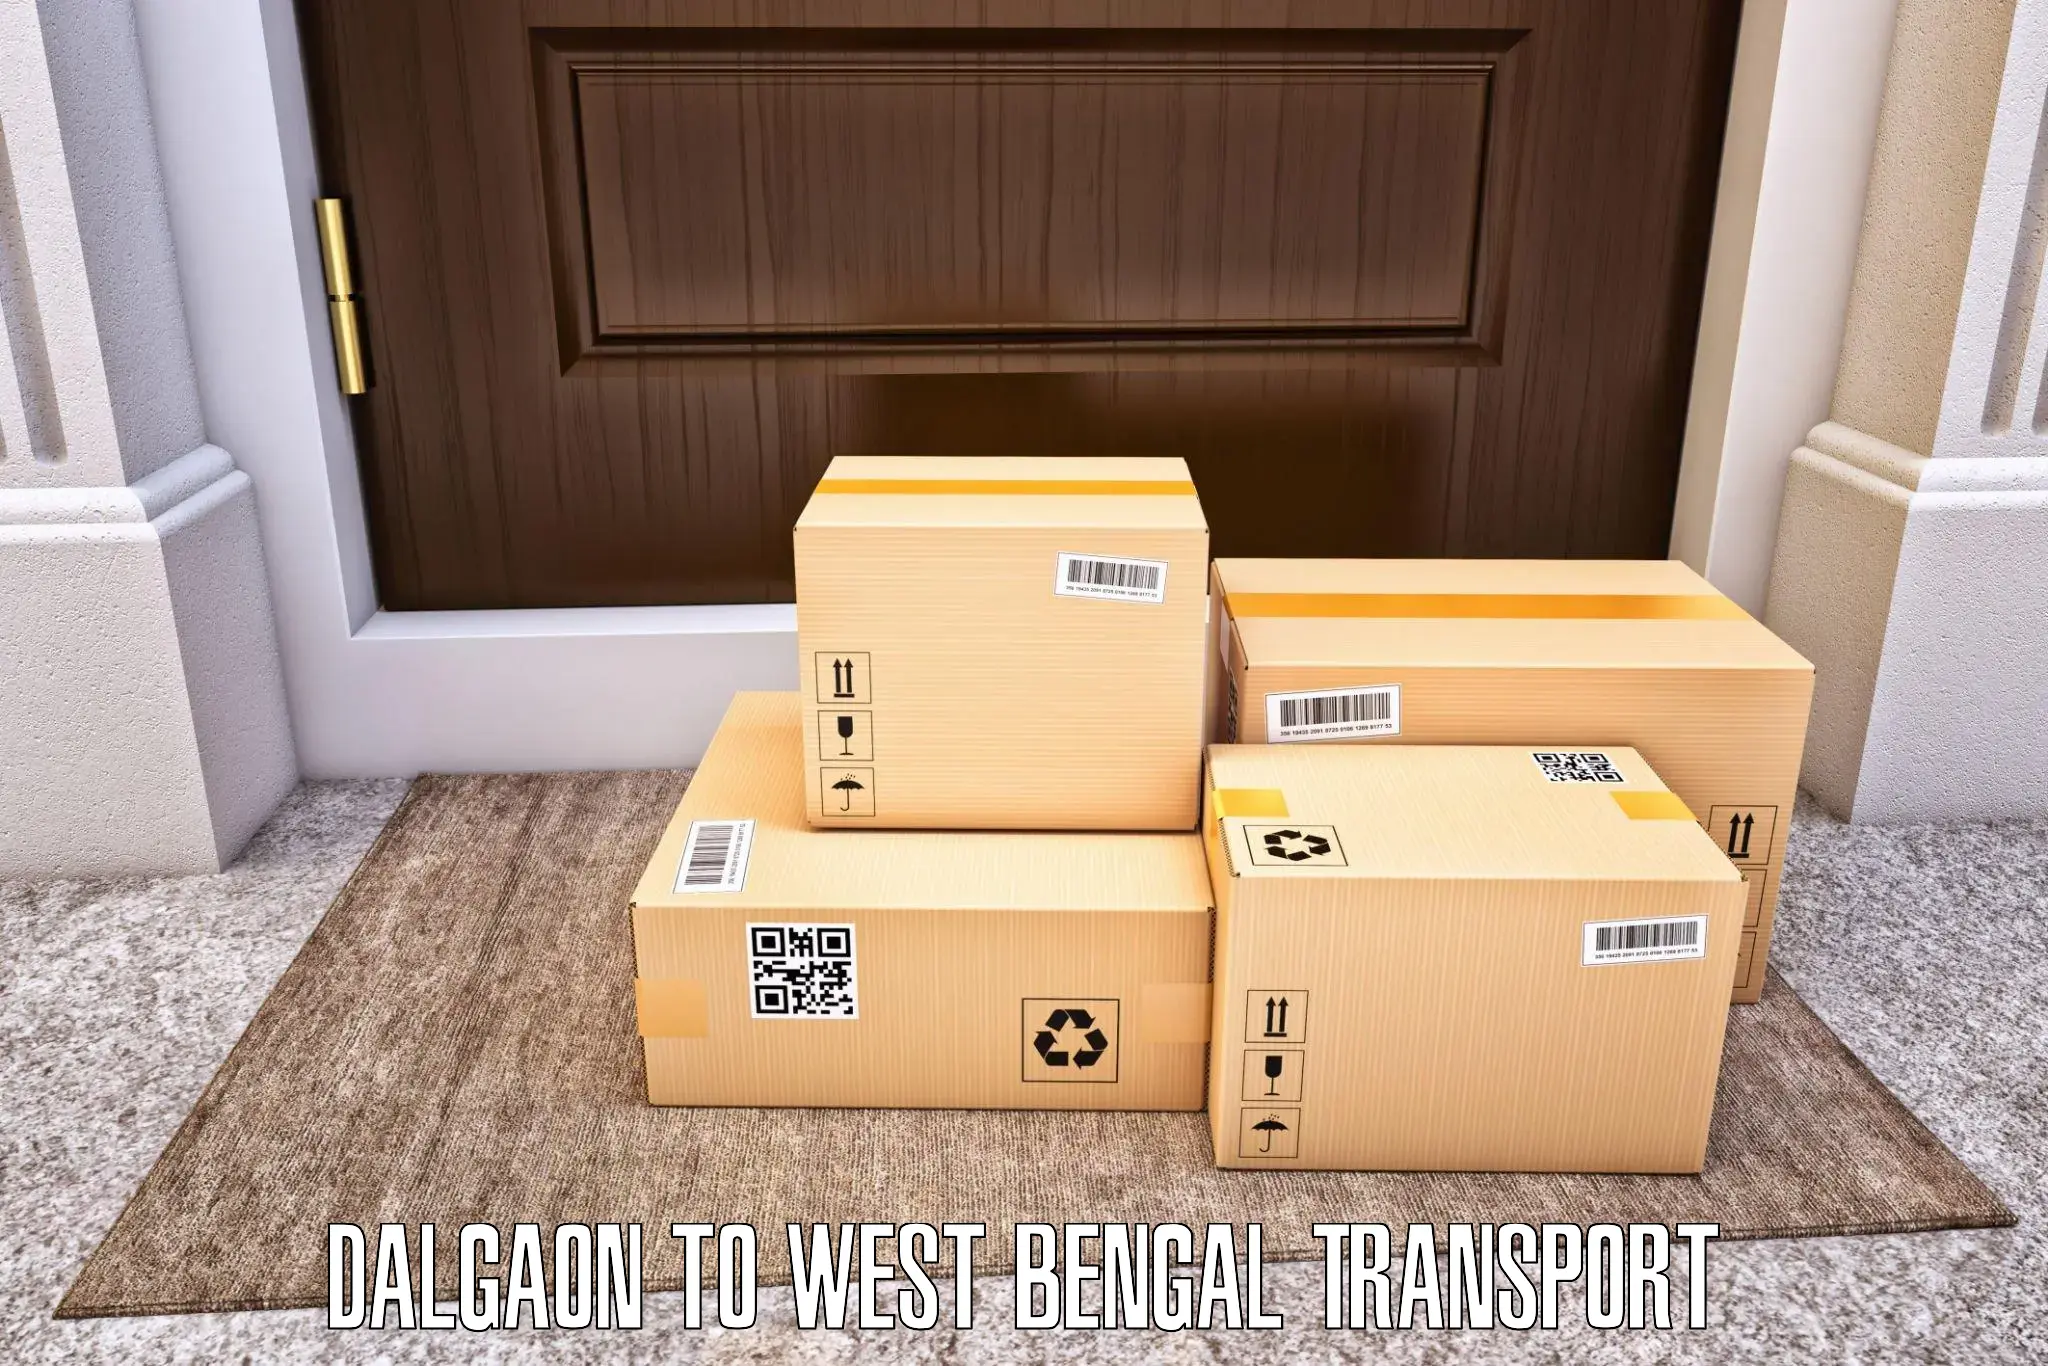 Vehicle transport services Dalgaon to Barasat